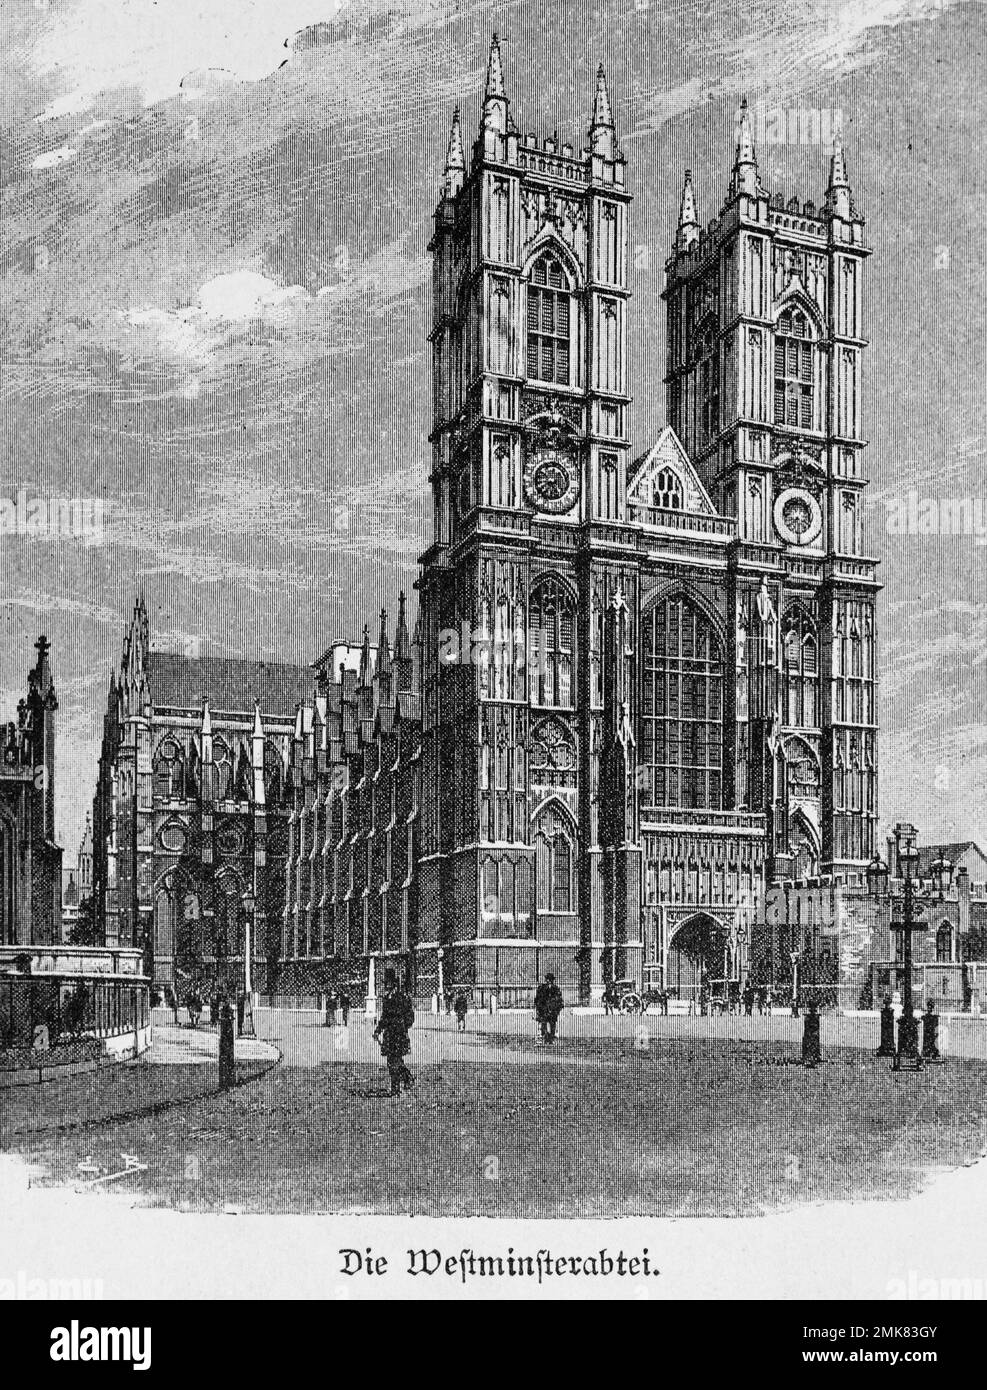 Abbaye de Westminster, Londres, illustration historique, gravure en bois, 19th siècle Banque D'Images